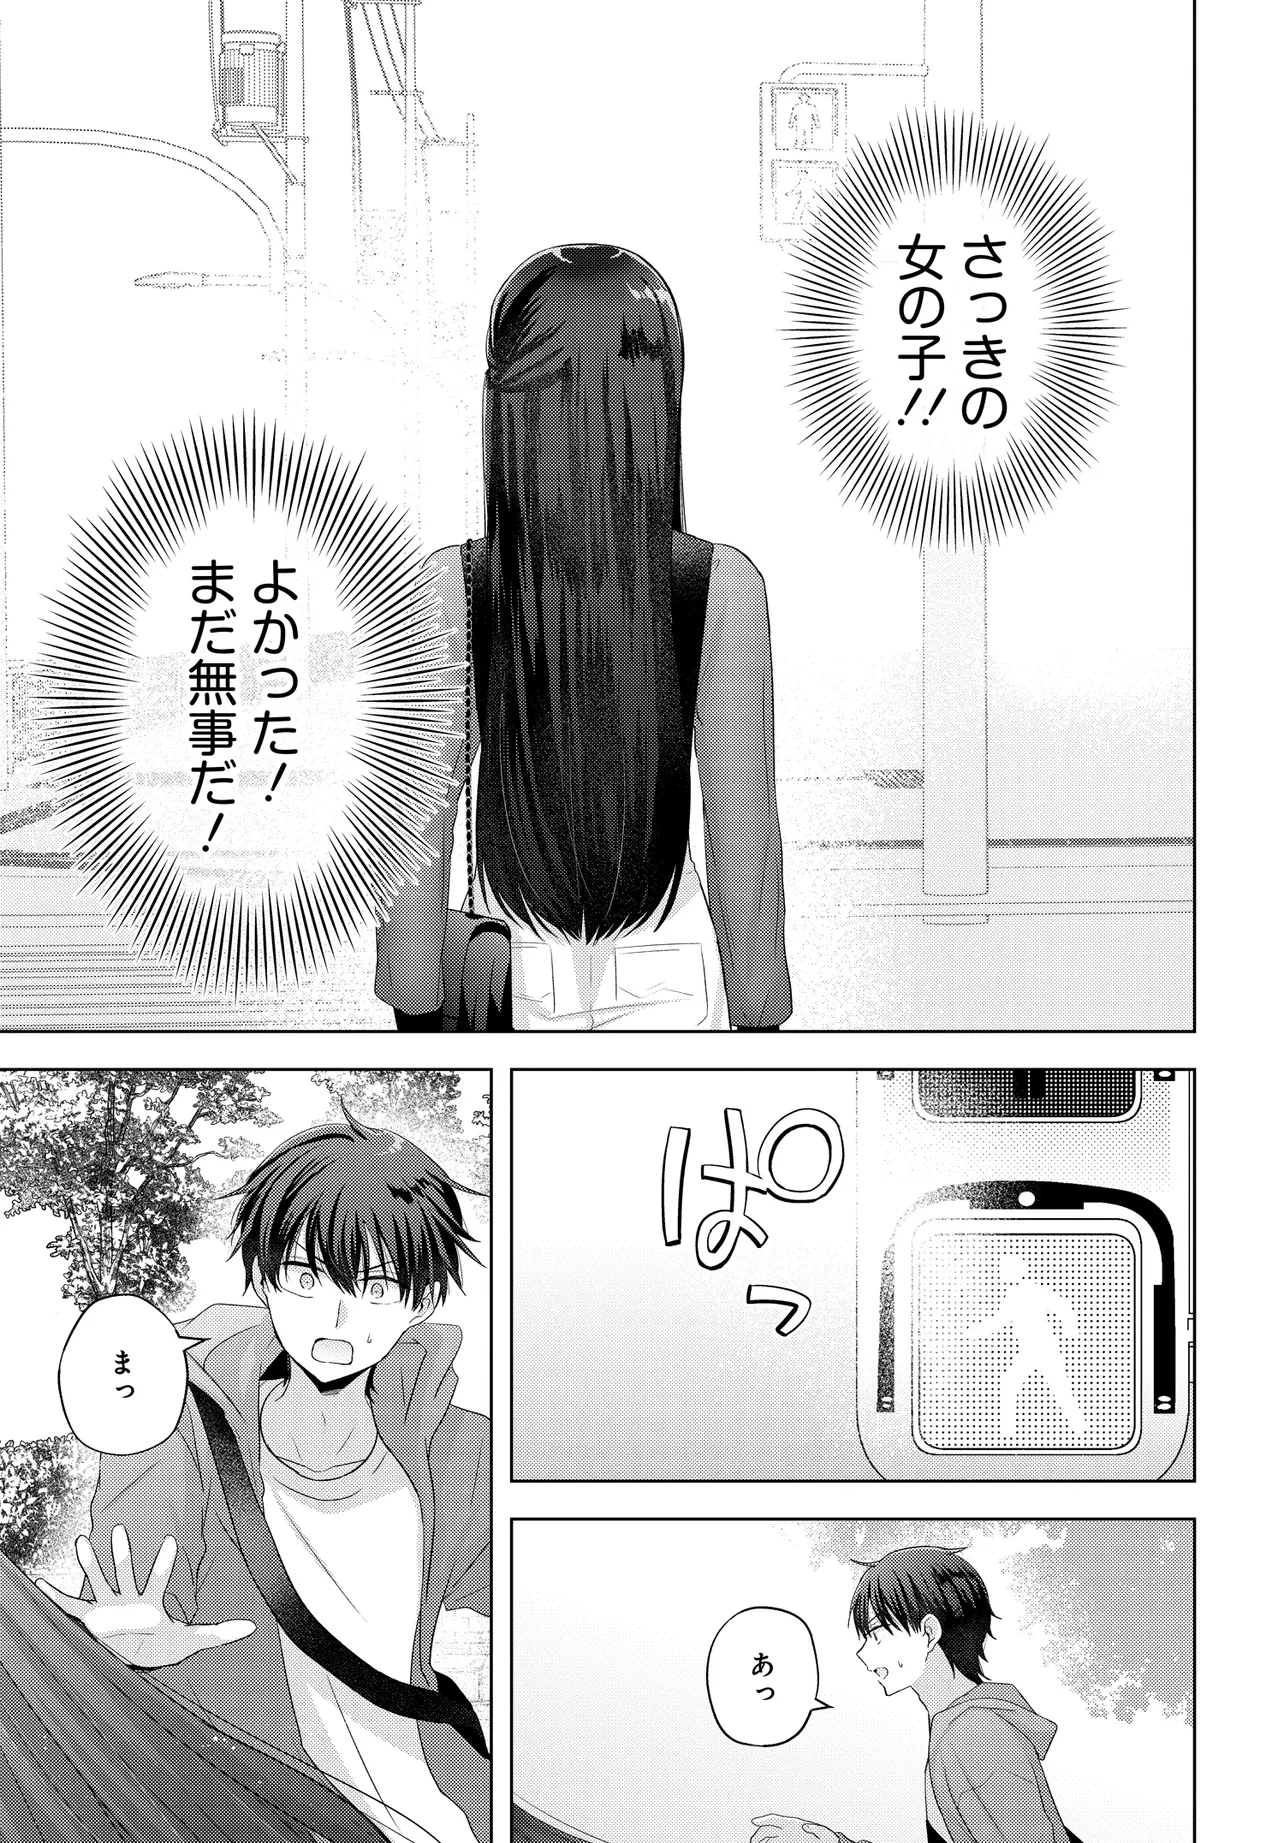 Suufun Go no Mirai ga Wakaru you ni Natta kedo, Onnagokoro wa Wakaranai. - Chapter 1 - Page 7